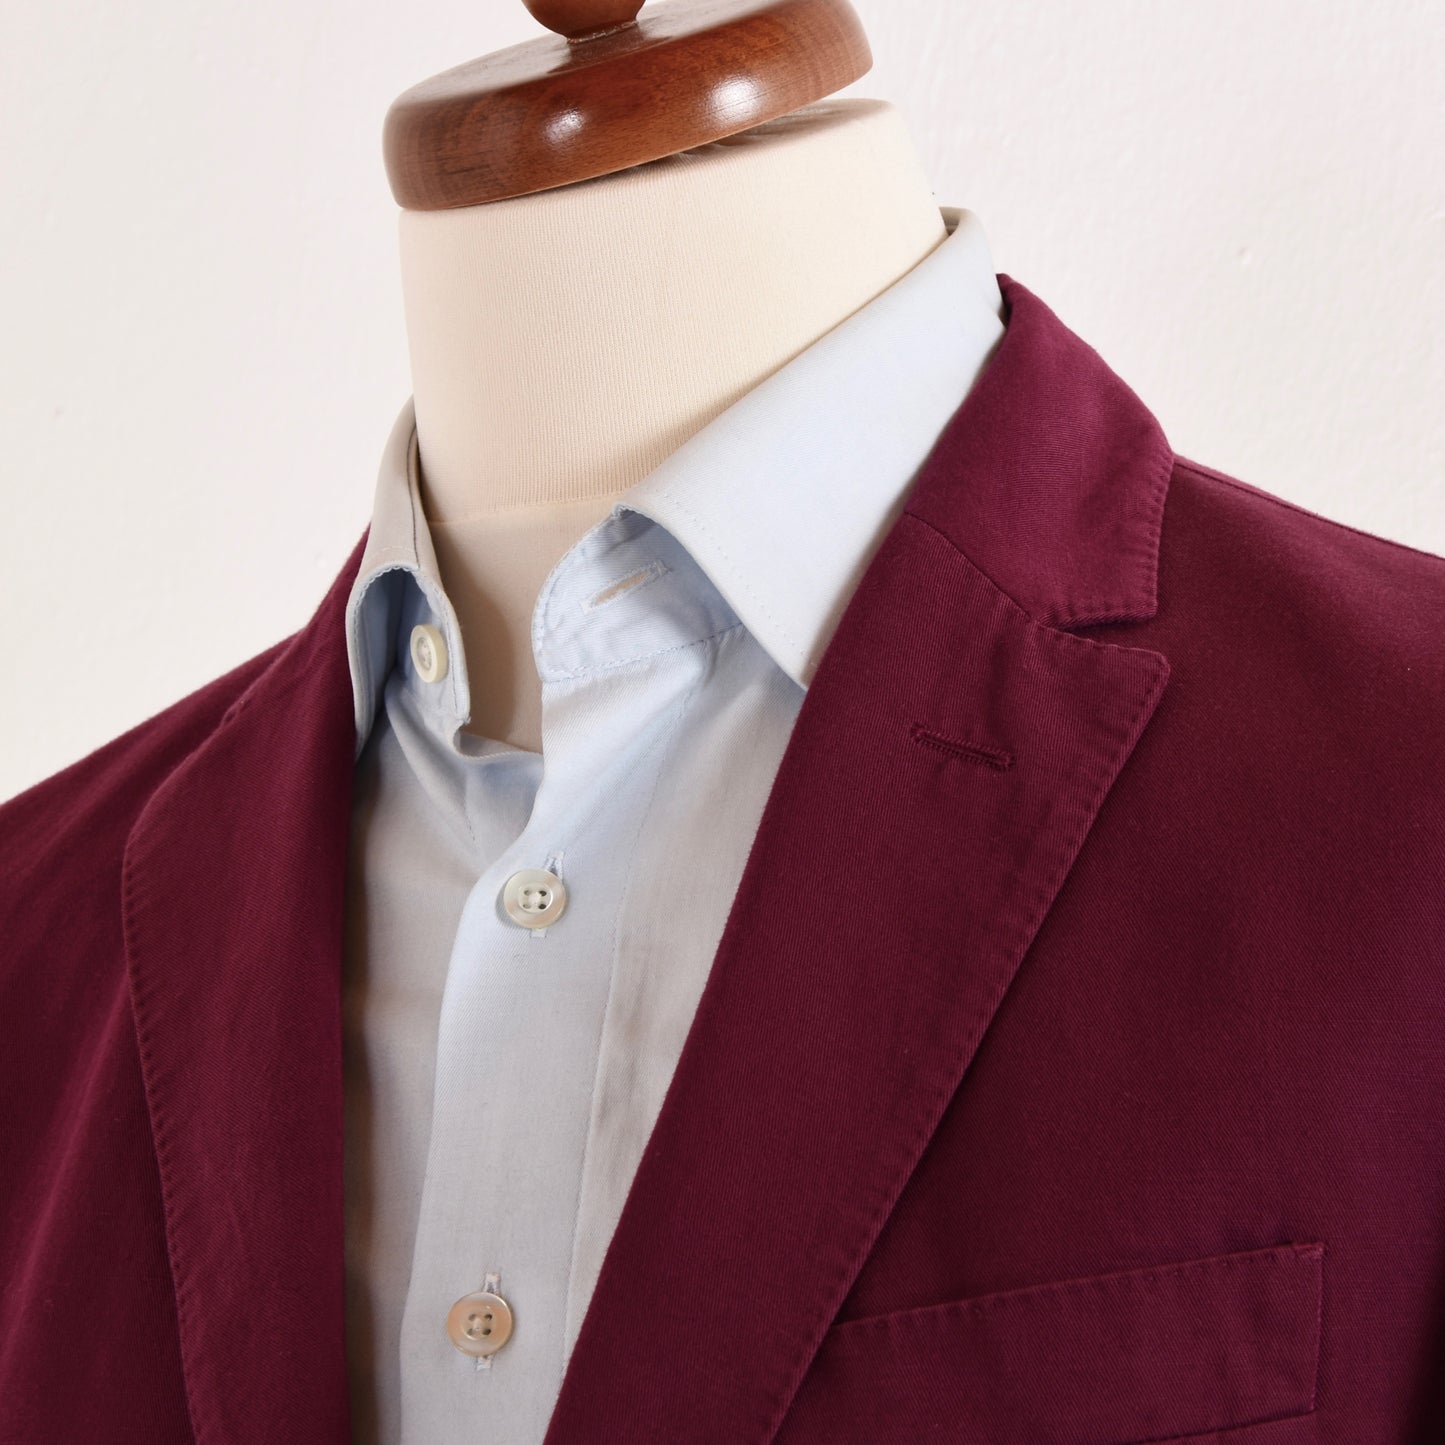 Burberry London Cotton/Linen Jacket Size 52 - Bright Plum